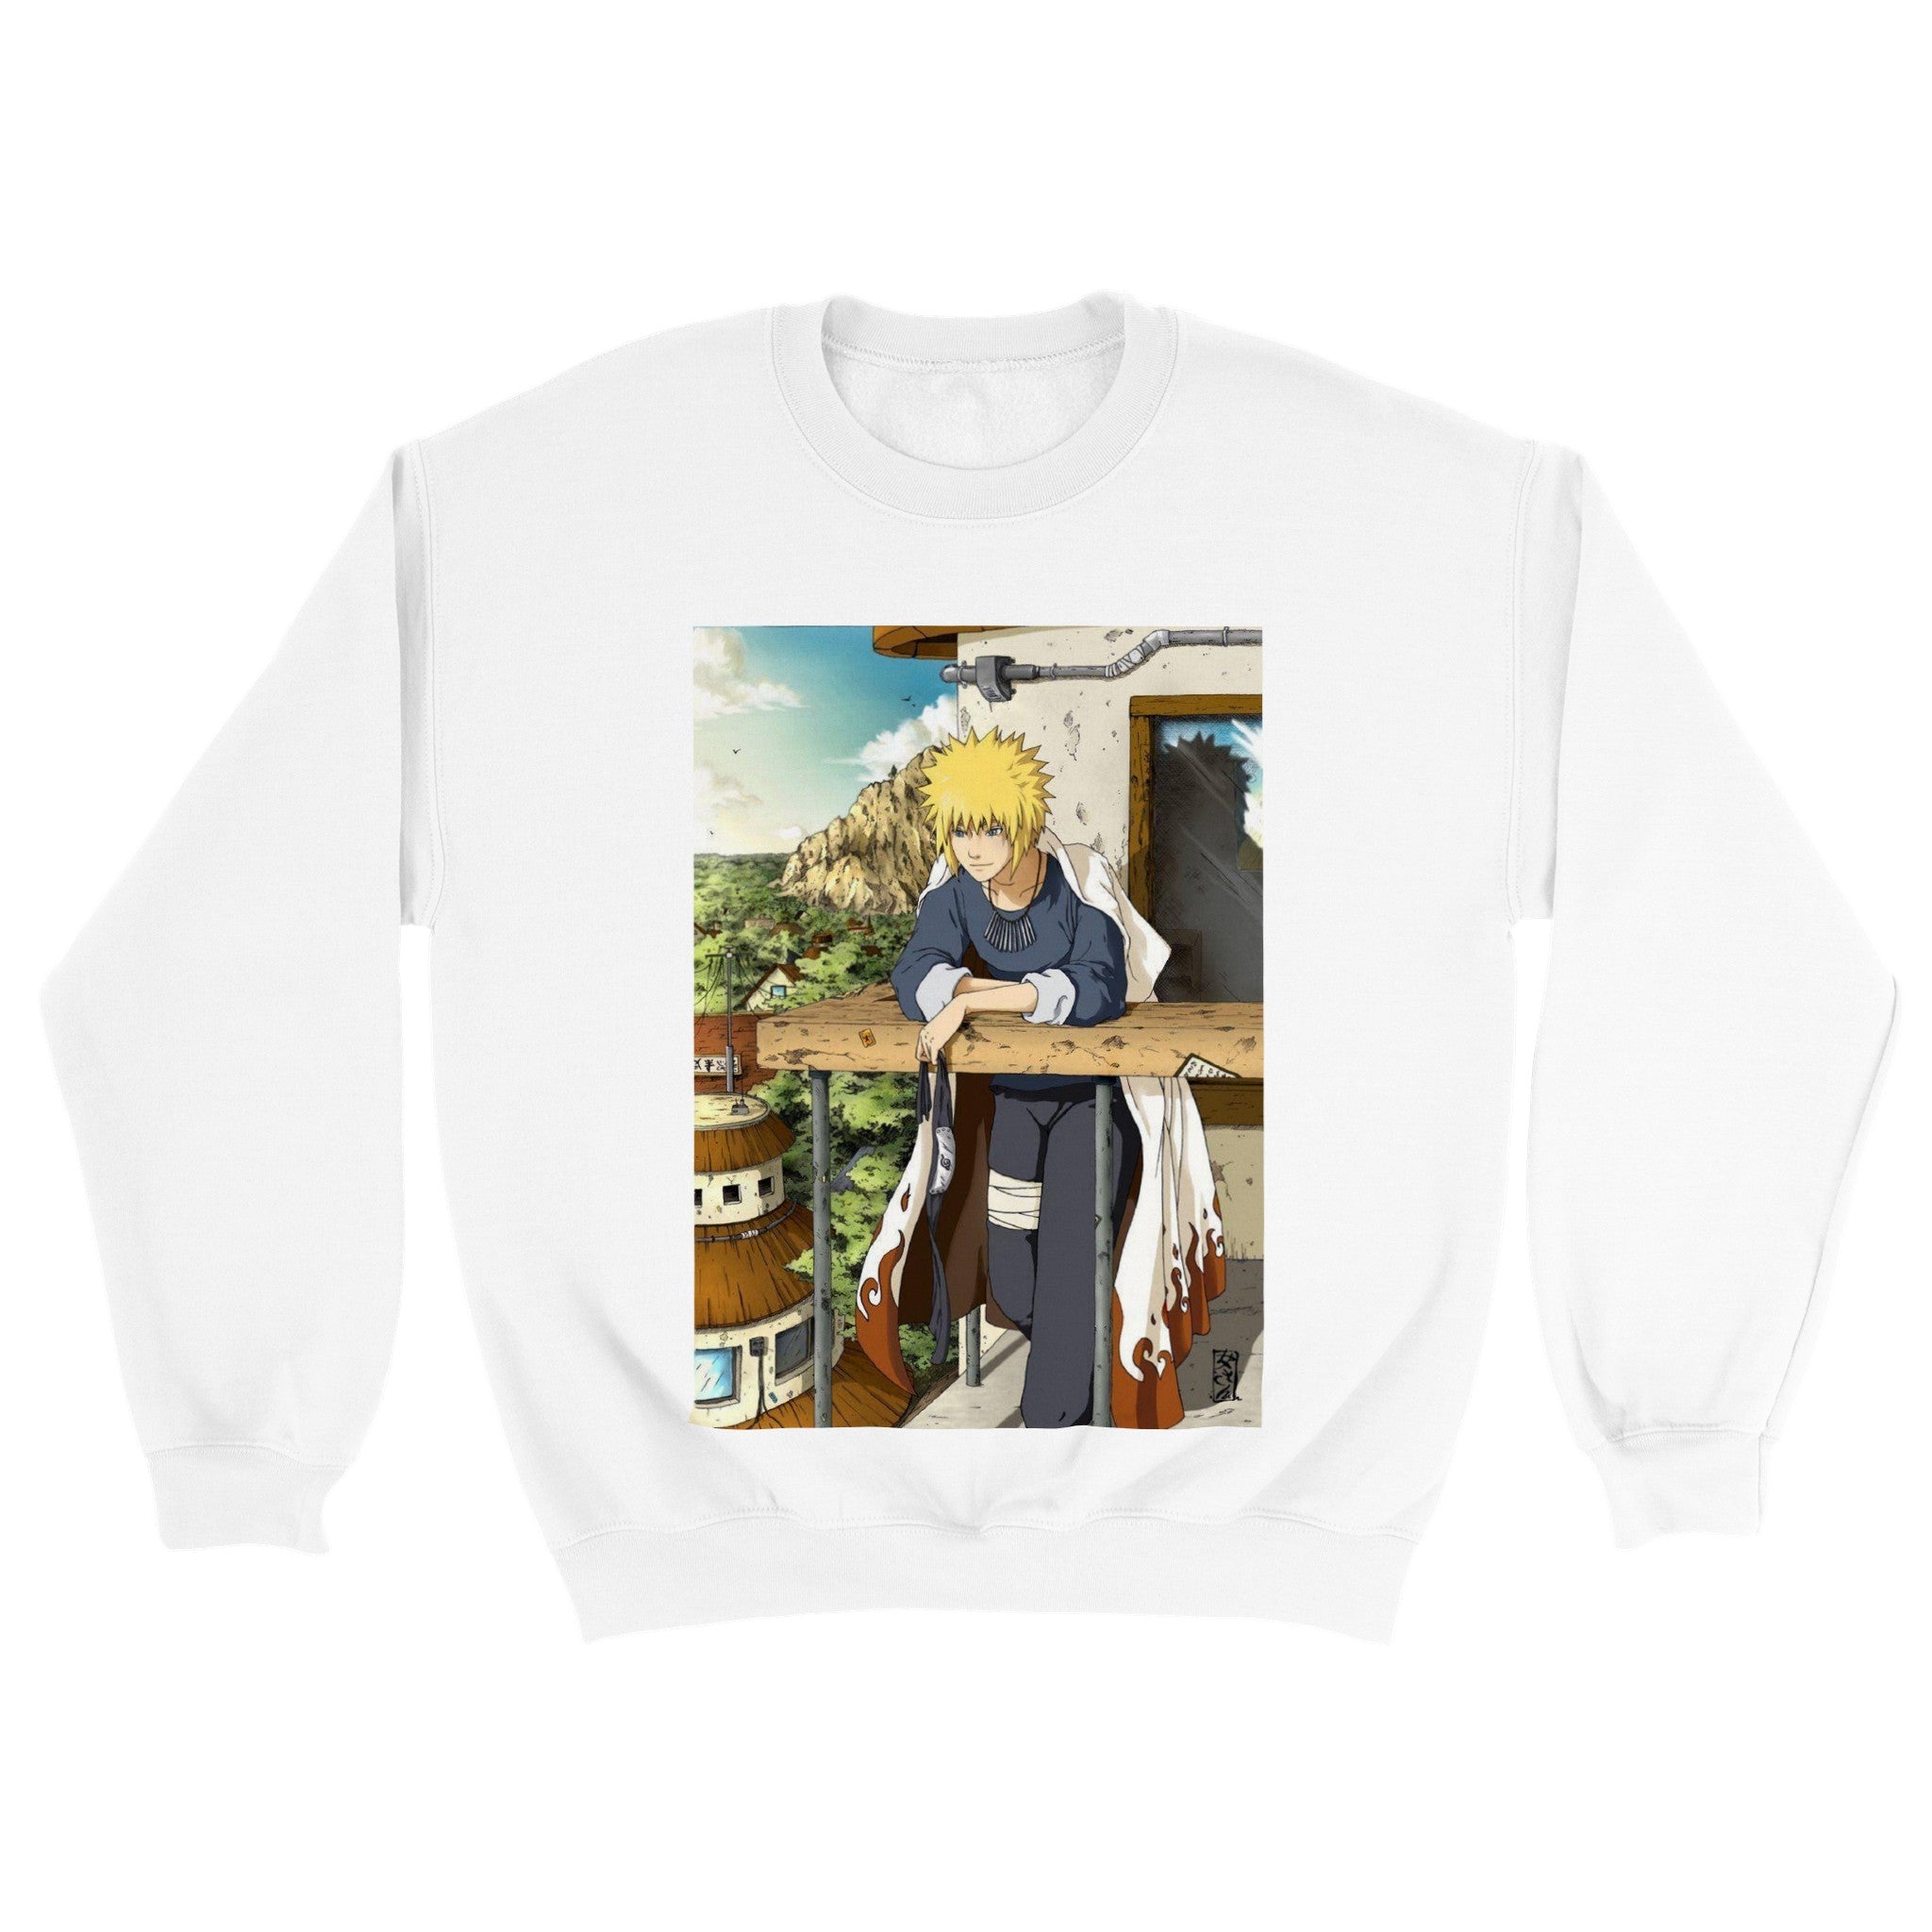 Naruto | Minato Namikaze | Anime Sweatshirt (Unisex)